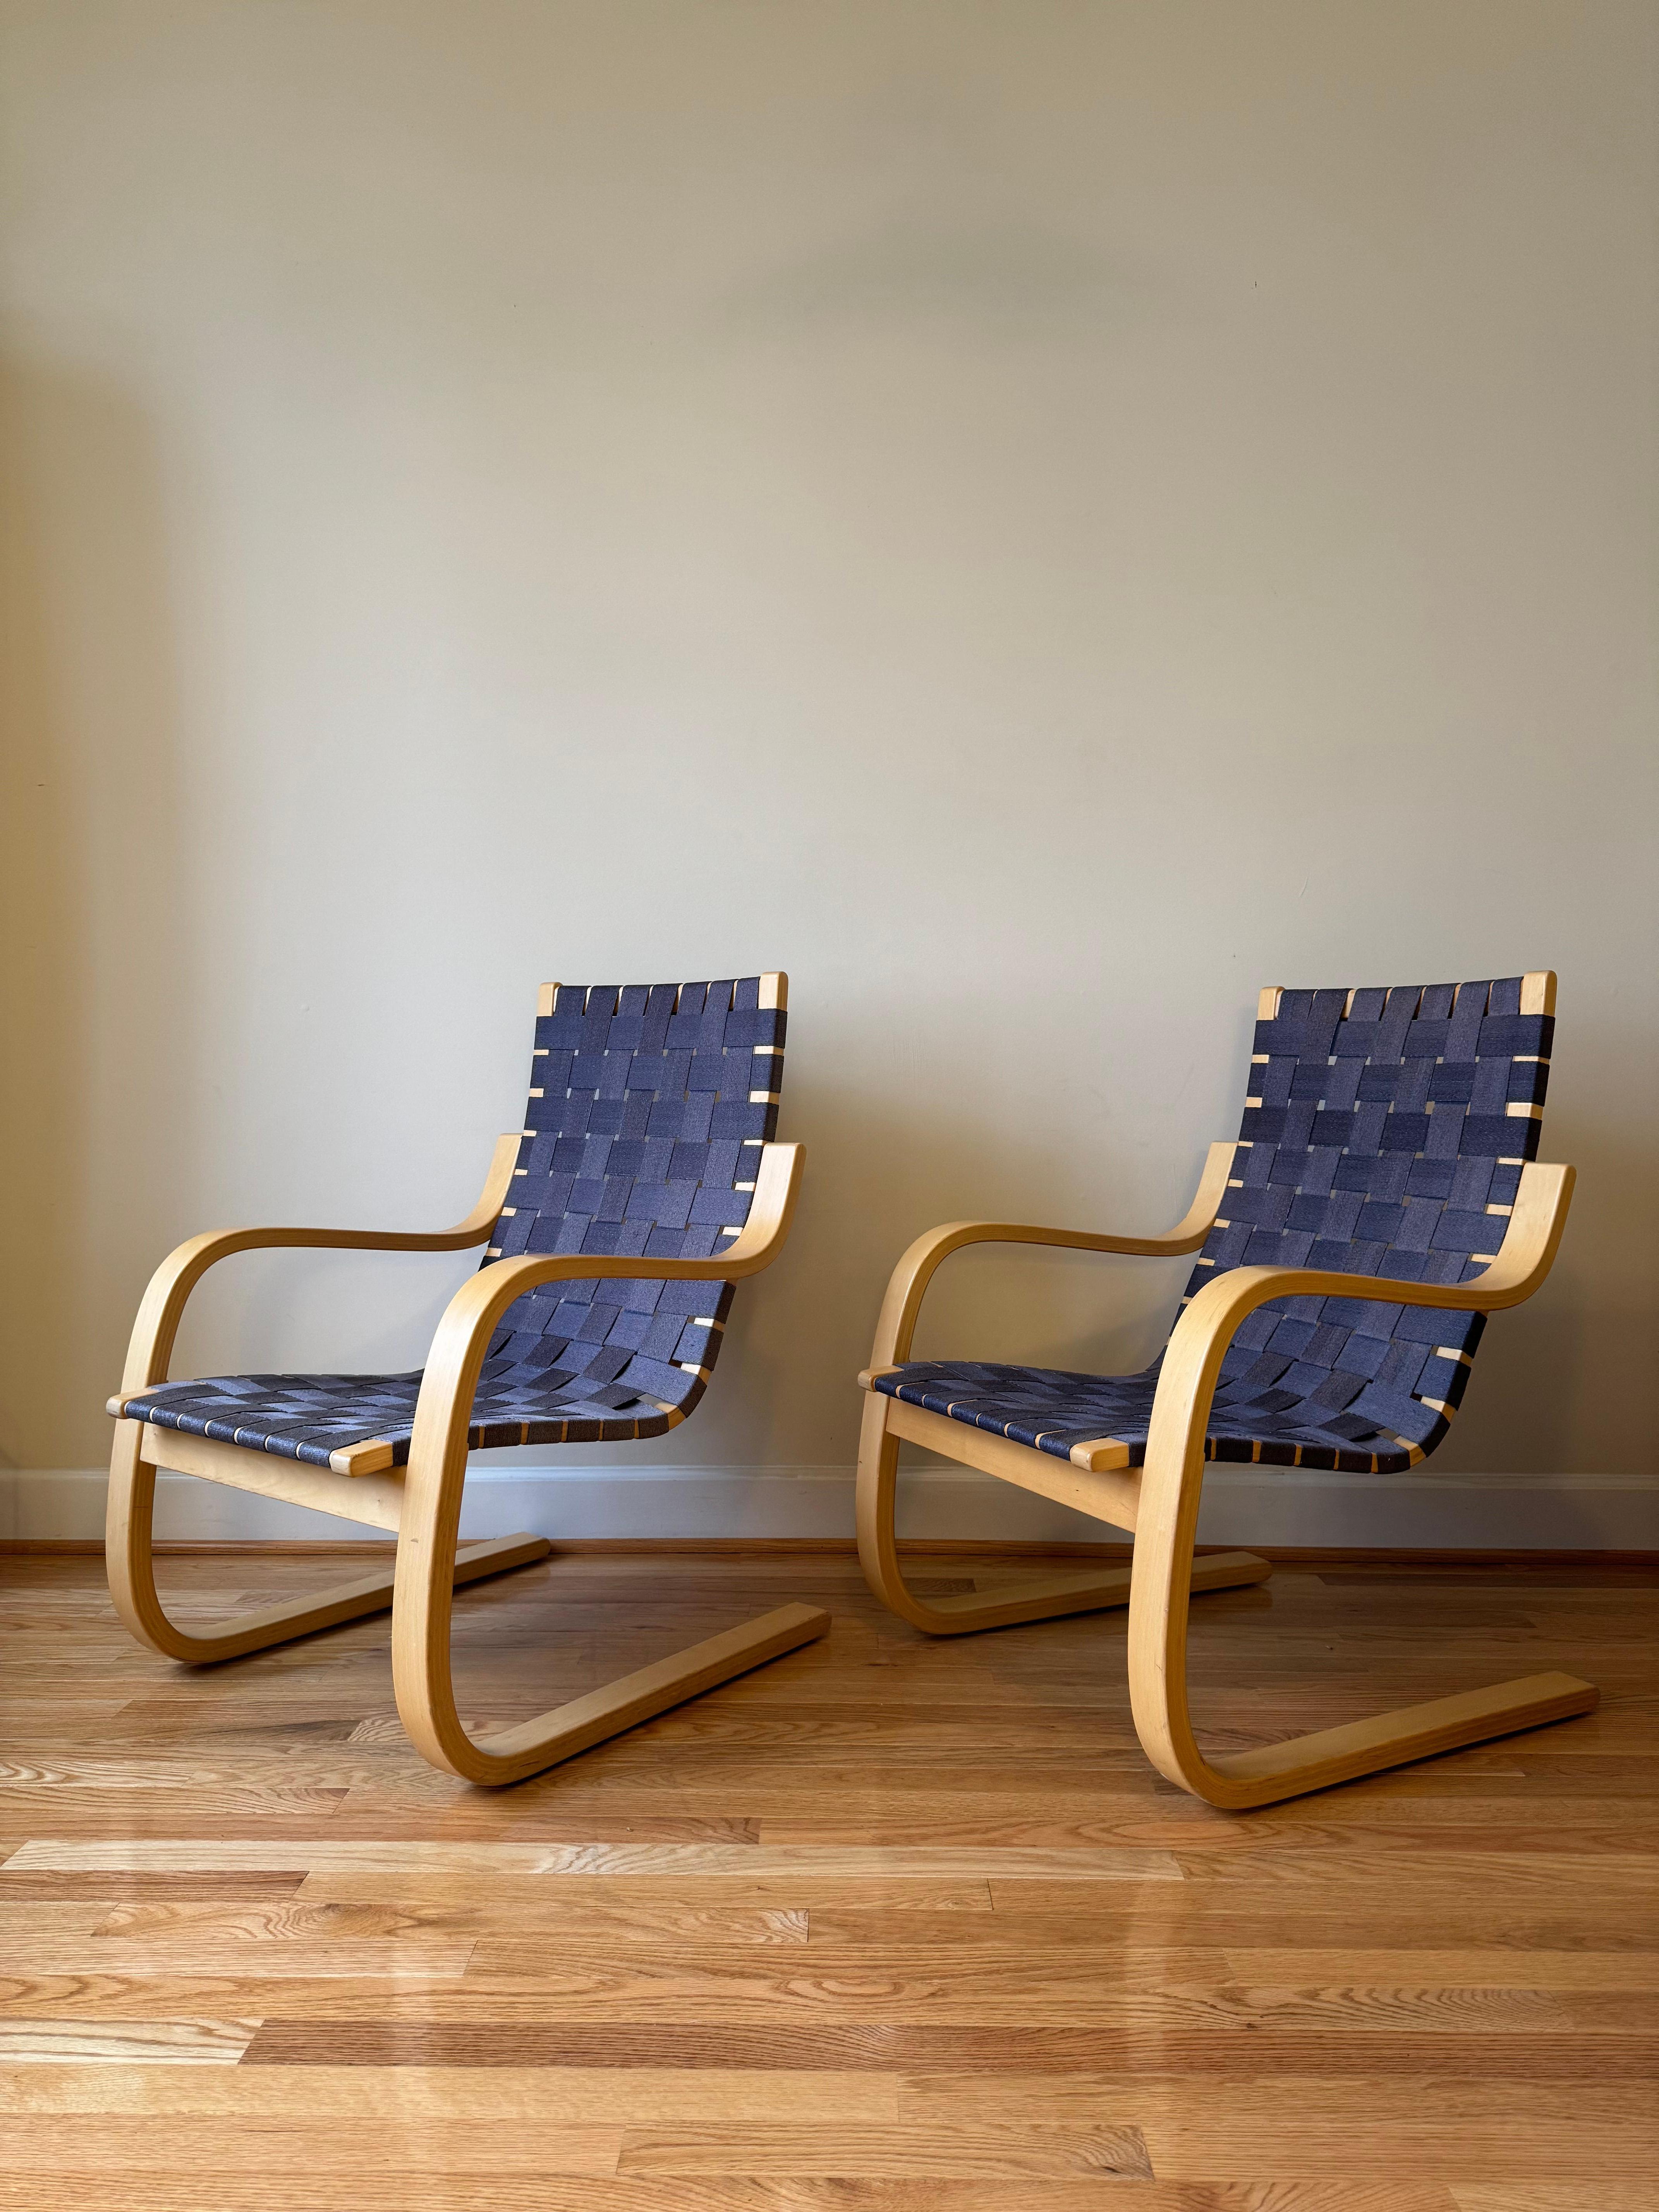 Le fauteuil 406 allie l'élégance simple au confort. 
Le bois s'altérant avec le temps, les accoudoirs sont formés d'une seule pièce qui est ensuite fendue en deux, ce qui permet à la chaise de rester parfaitement équilibrée en vieillissant. 
La